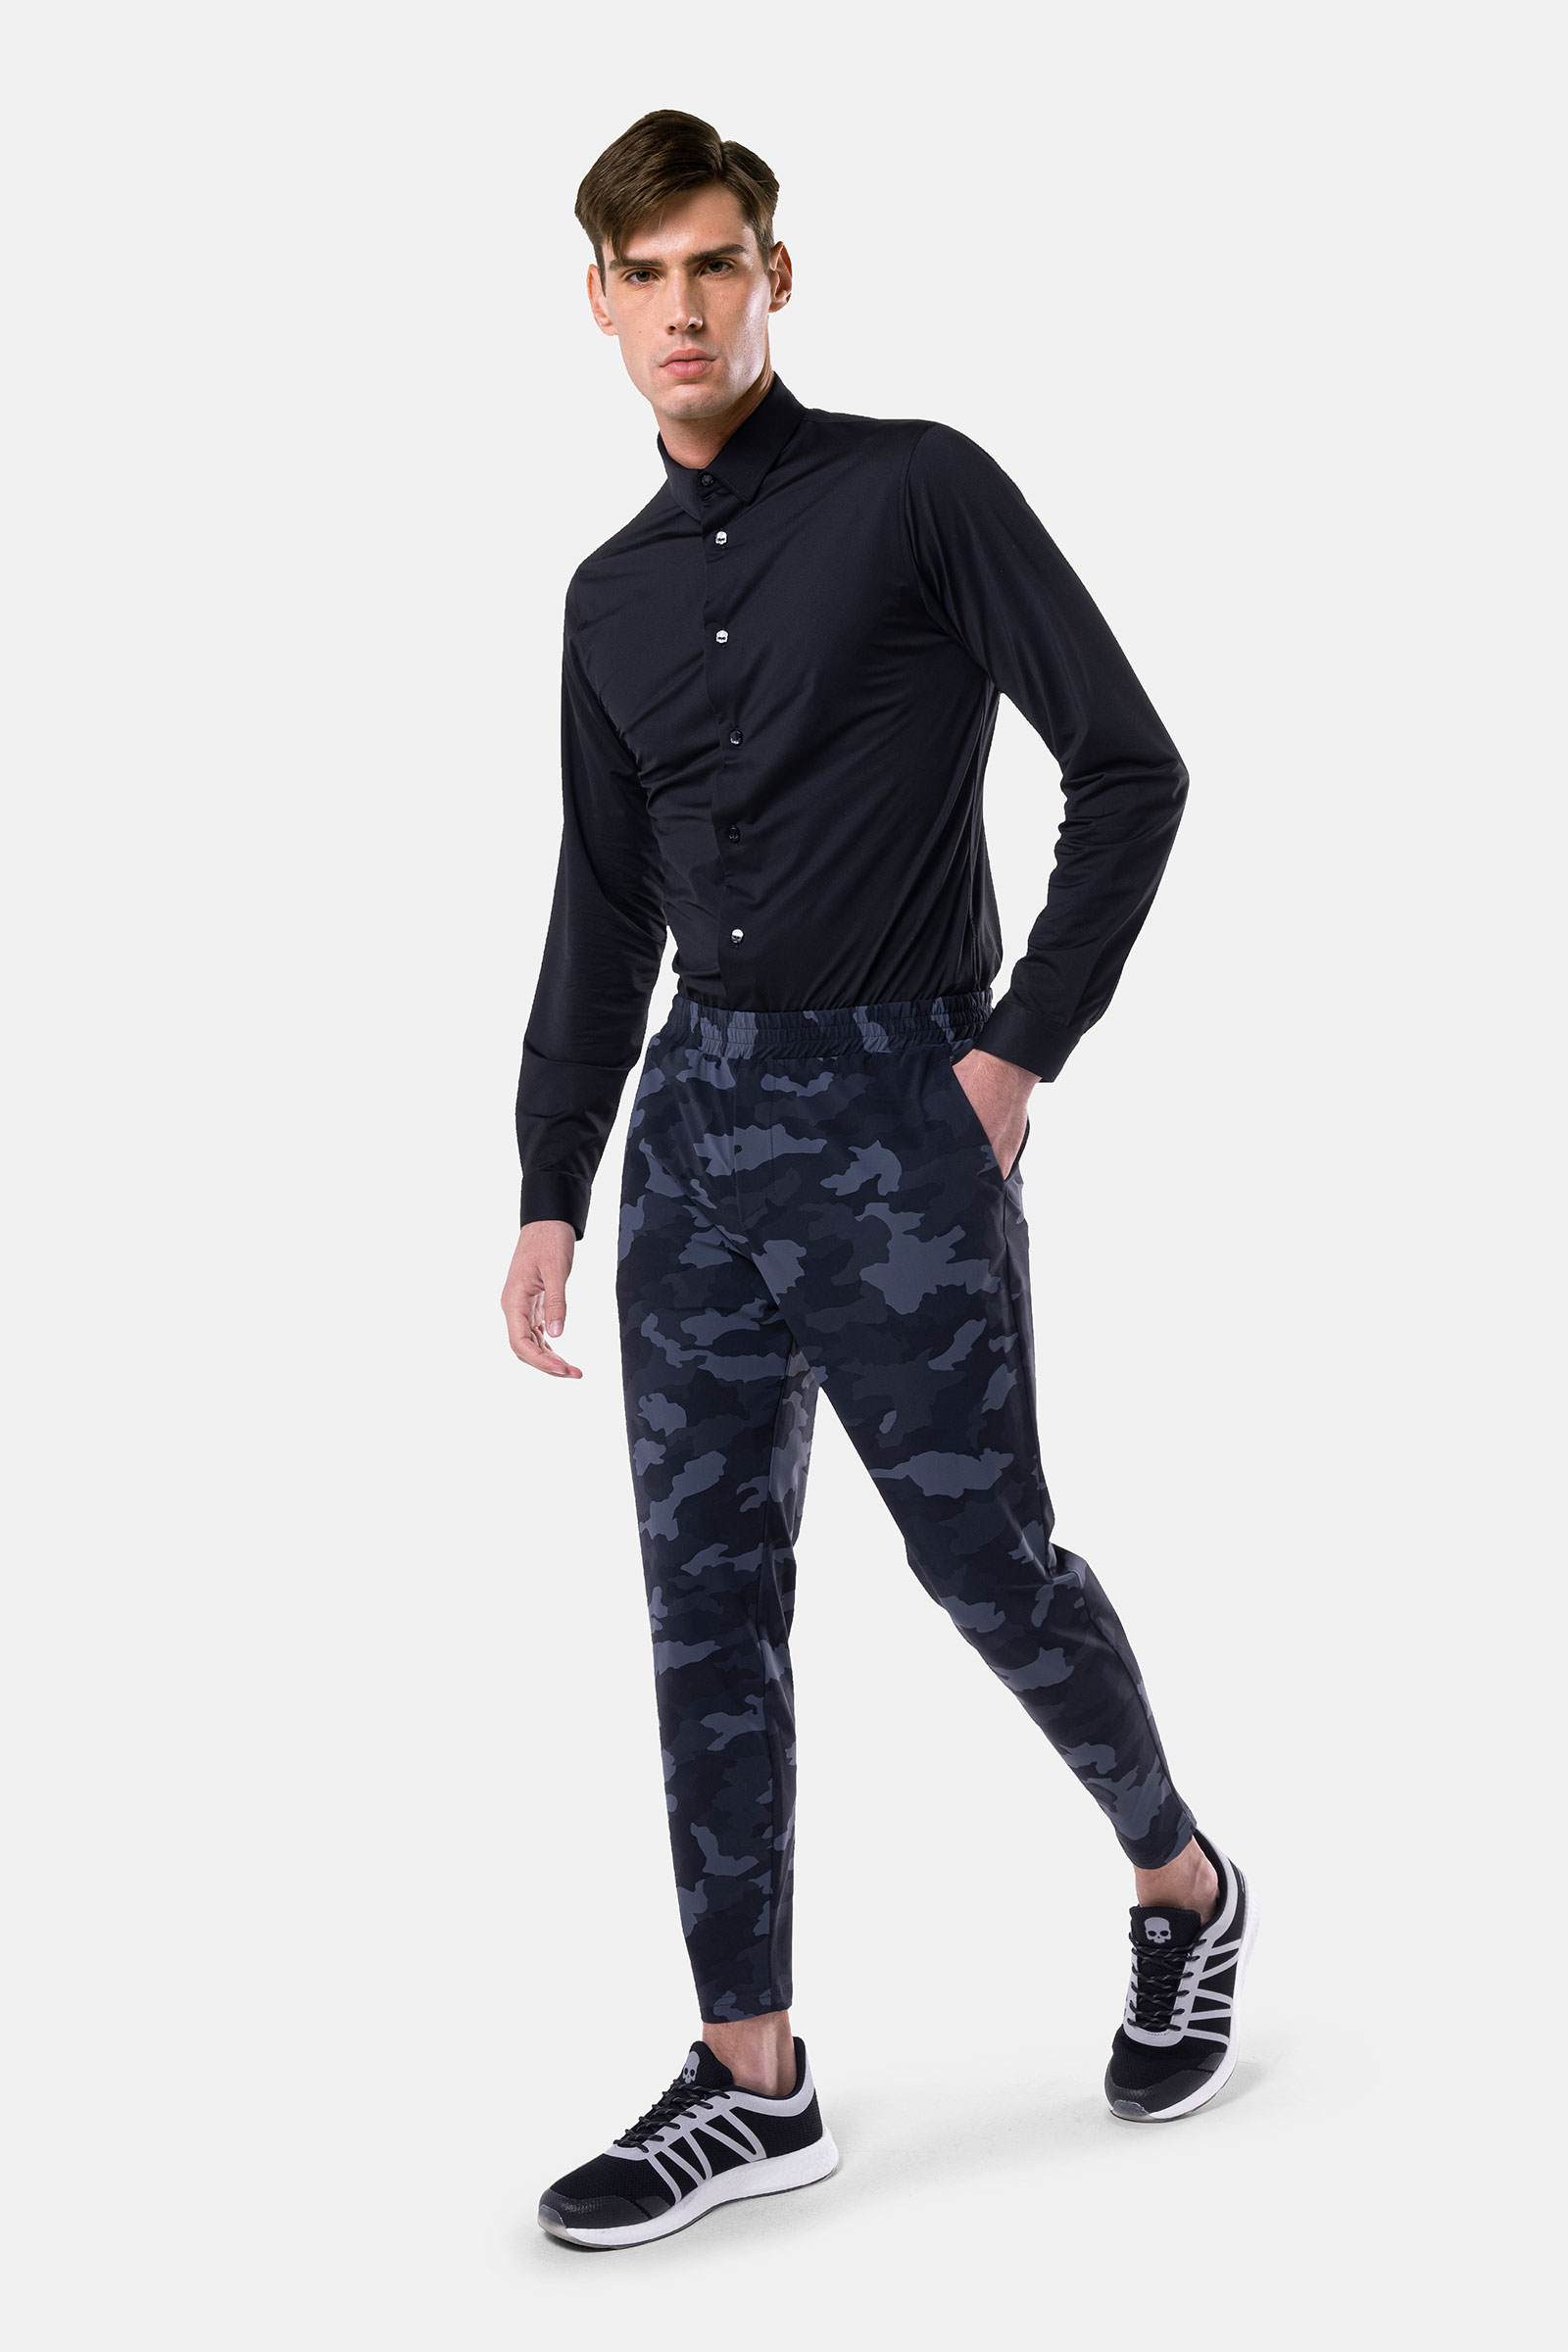 TECH SHIRT - BLACK OXFORD - Hydrogen - Luxury Sportwear